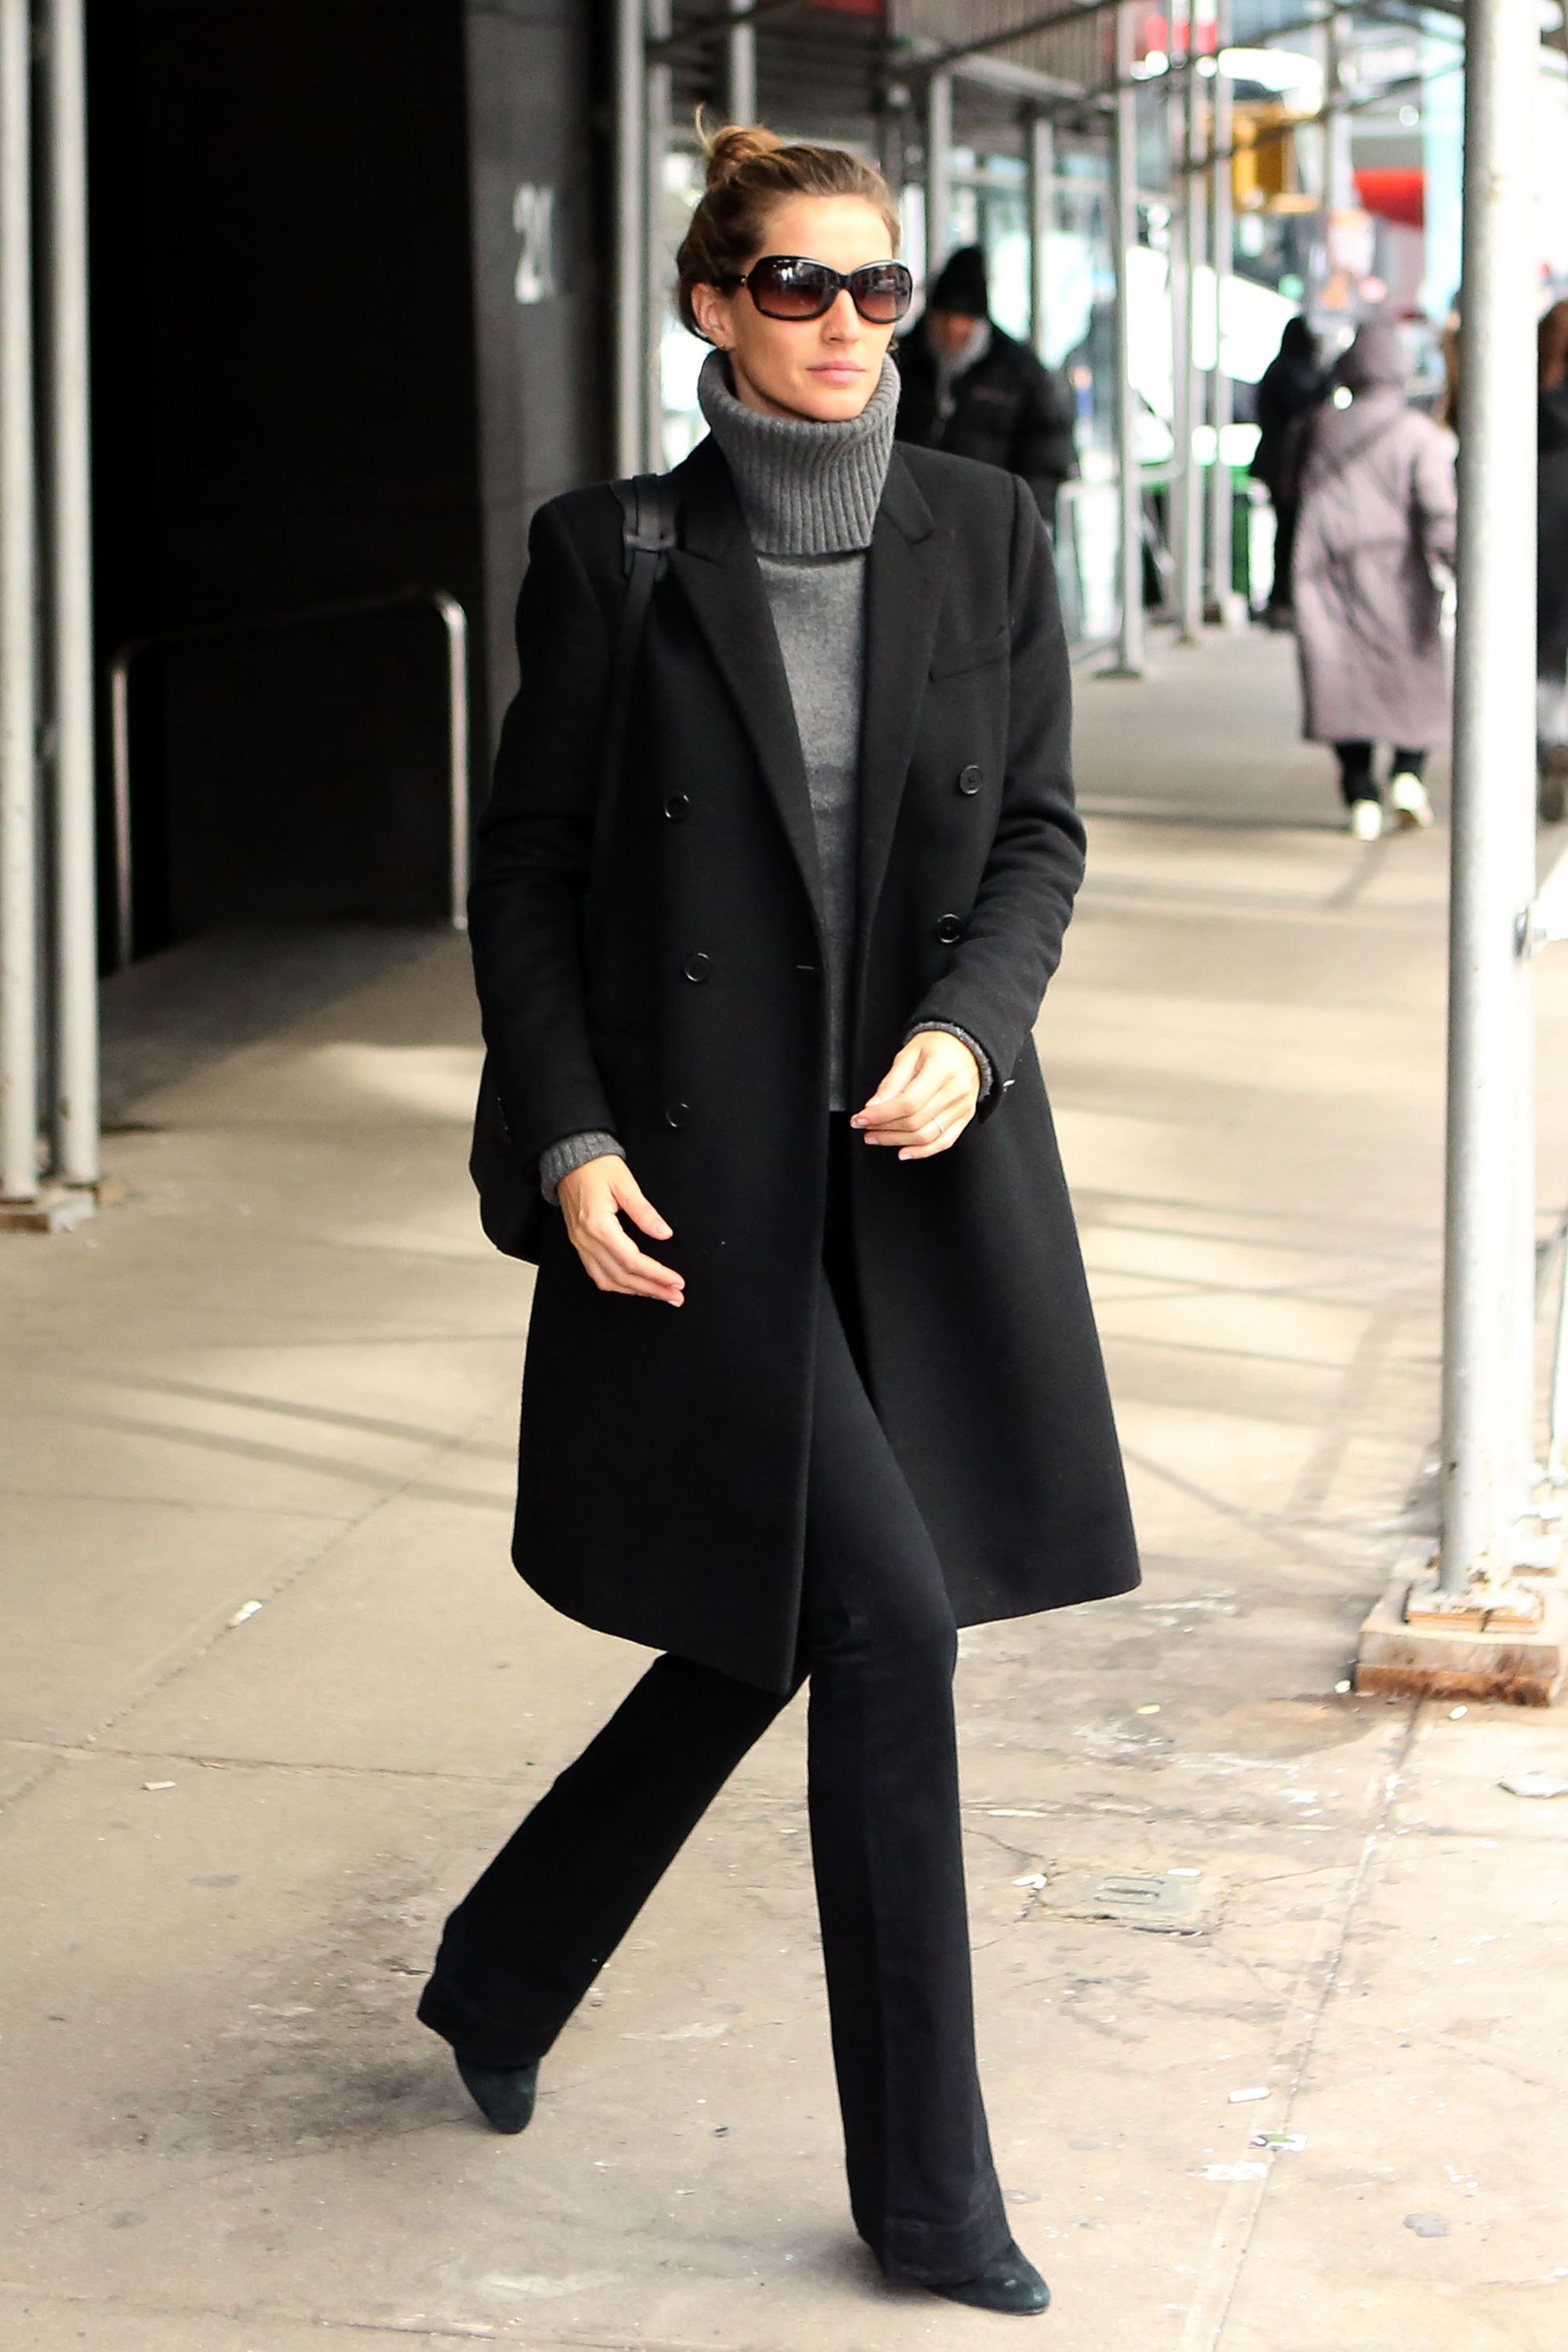 Пальто черное женское фото с чем носить фото